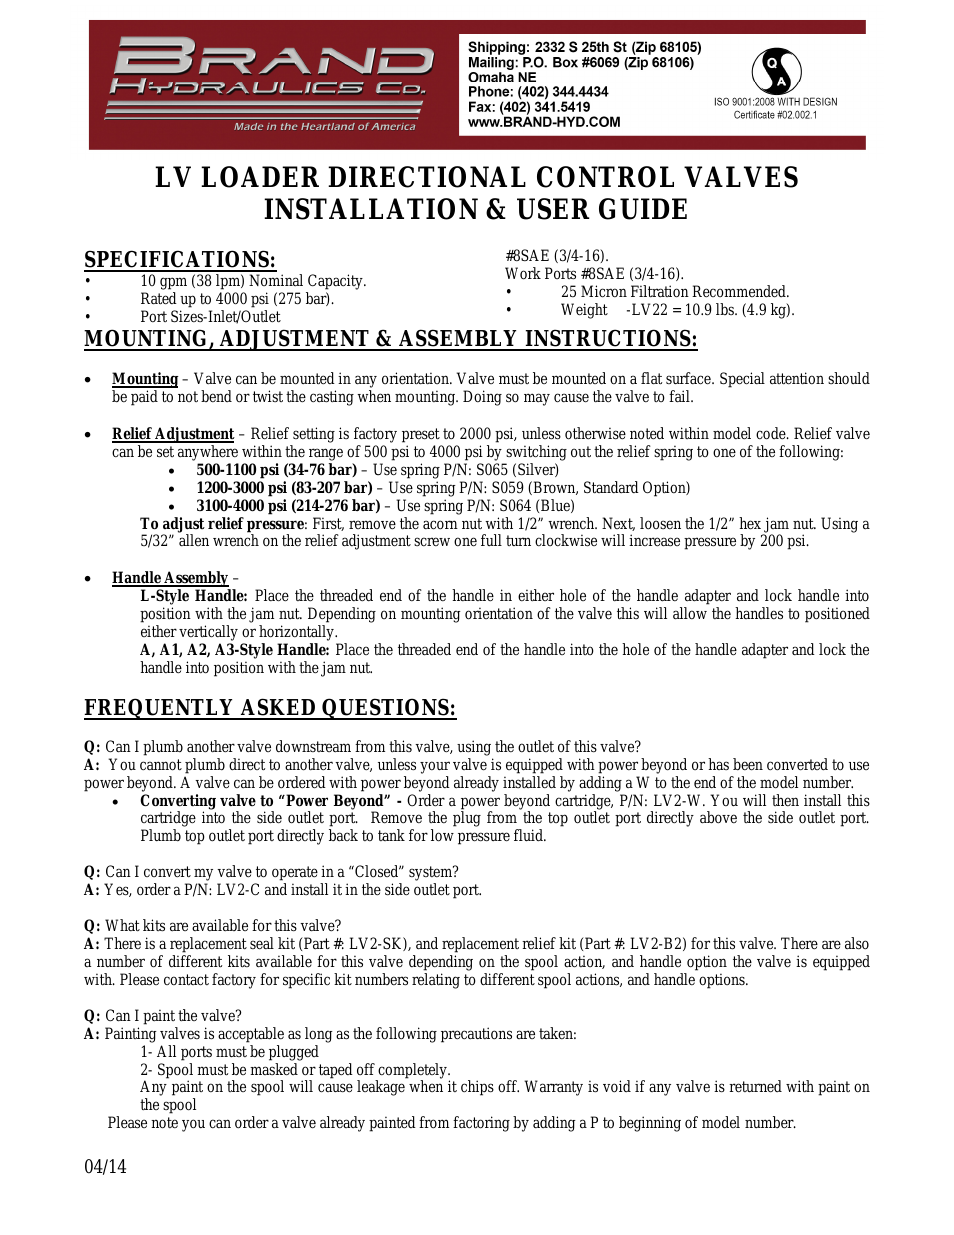 LV LOADER DIRECTIONAL CONTROL VALVES